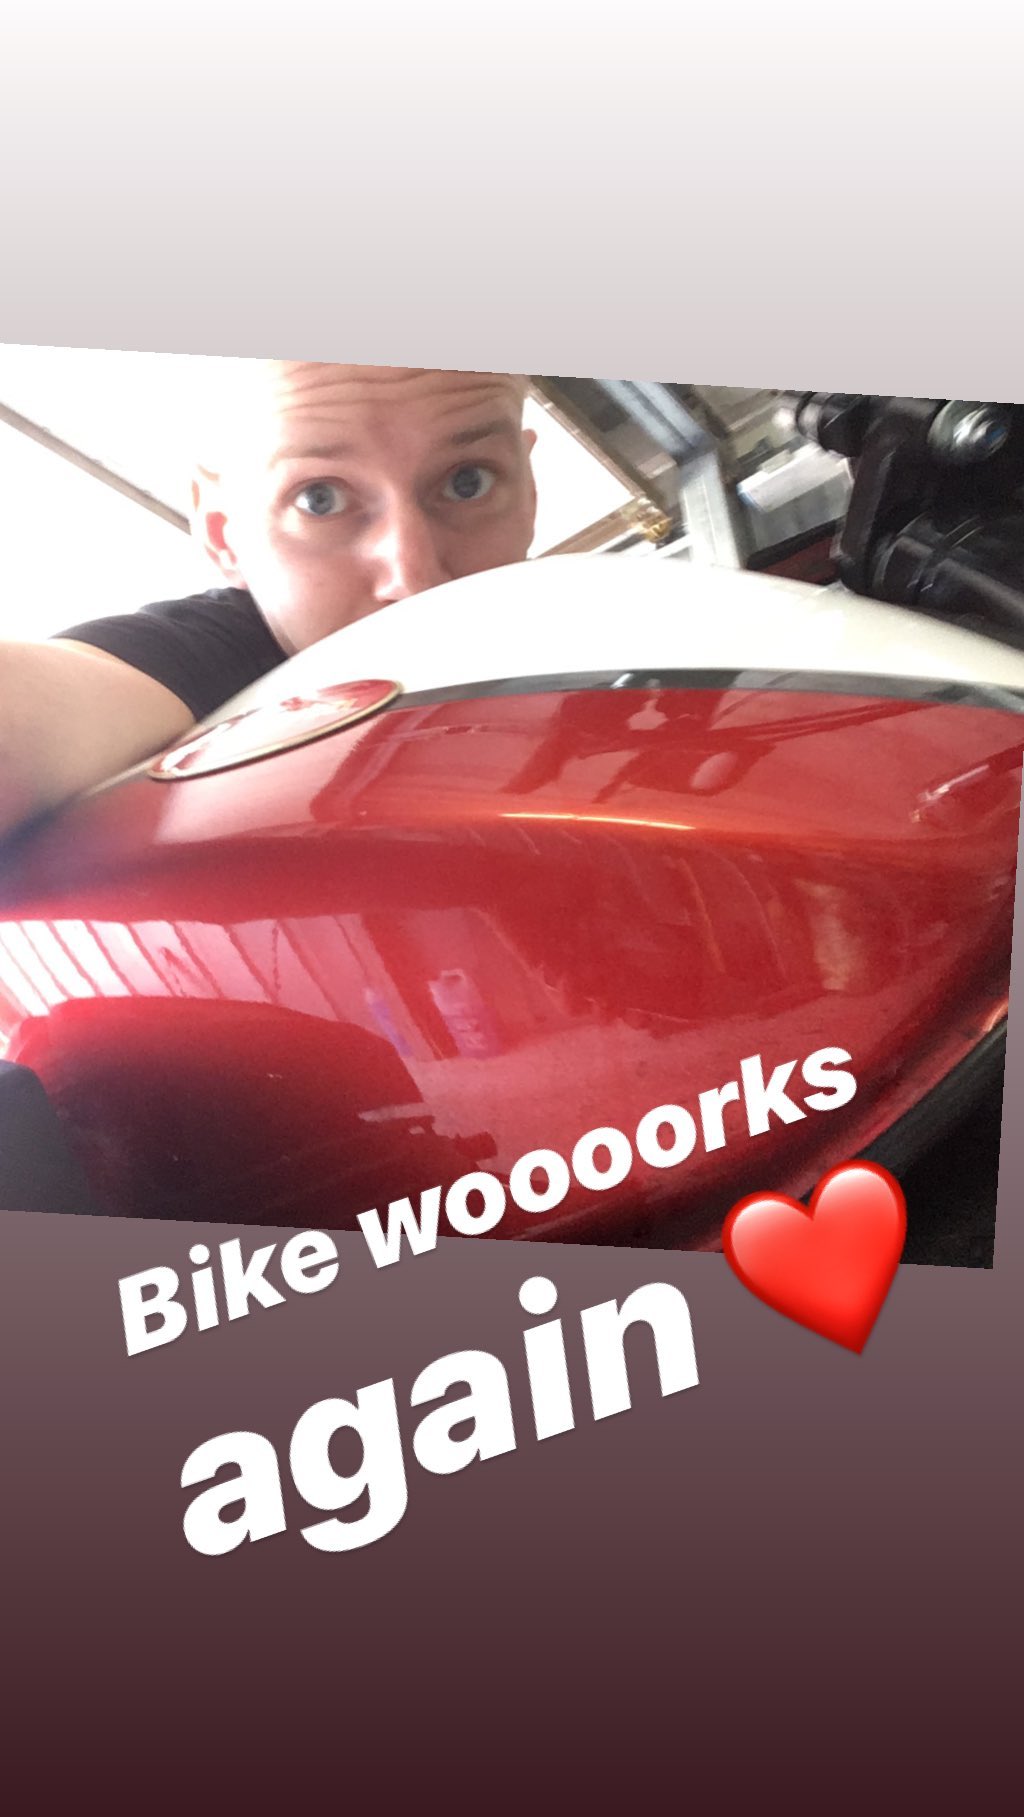 Bike woooorks